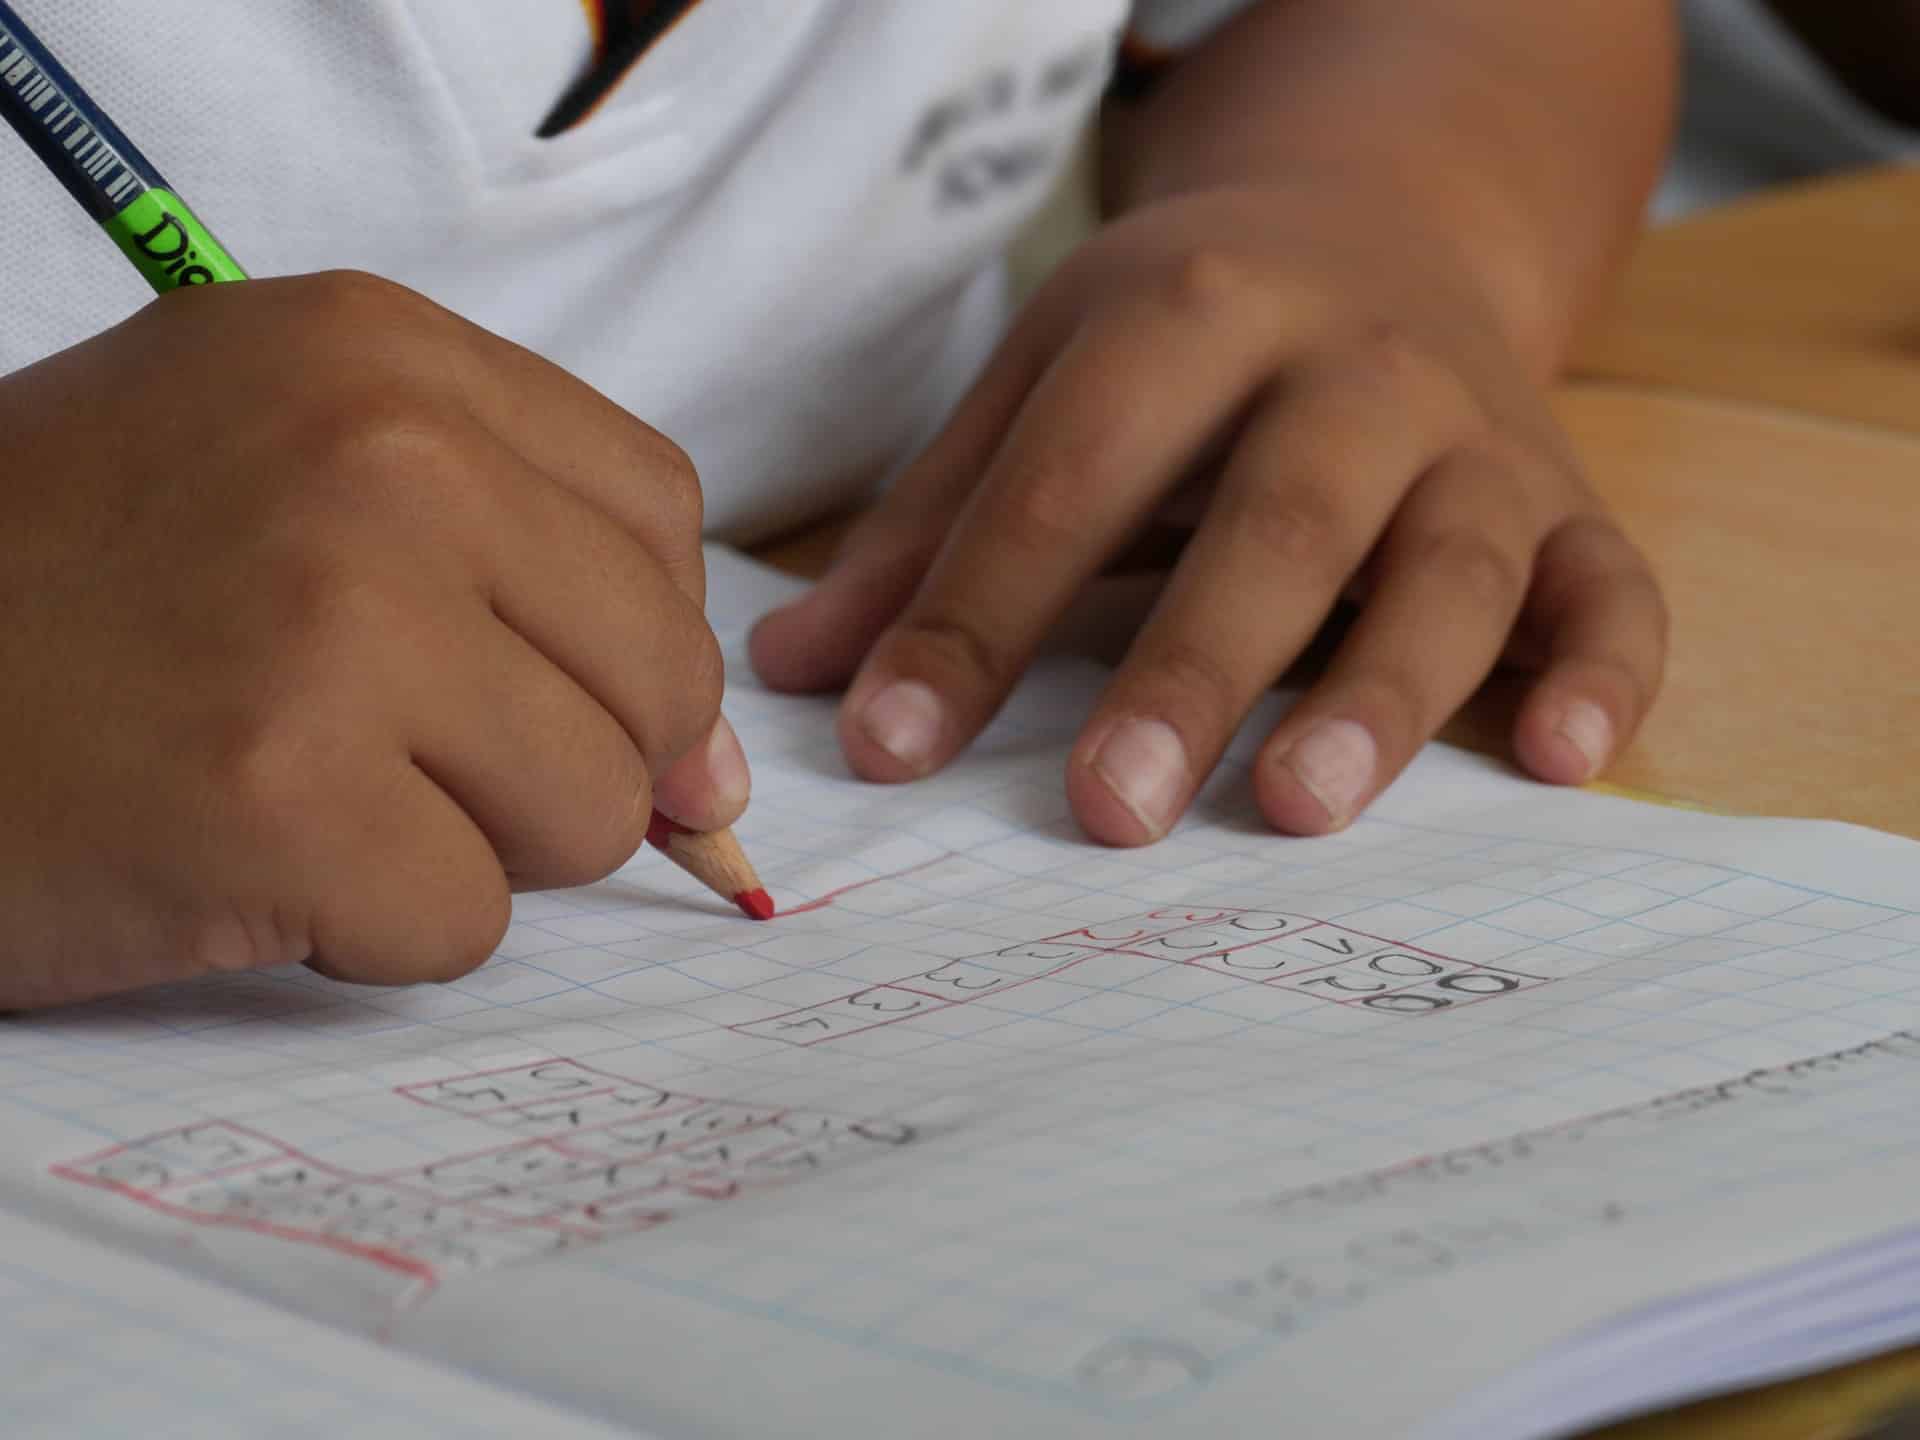 Twee kinderhanden tekenen wiskundige tabellen met een rood kleurpotlood in een schrift.